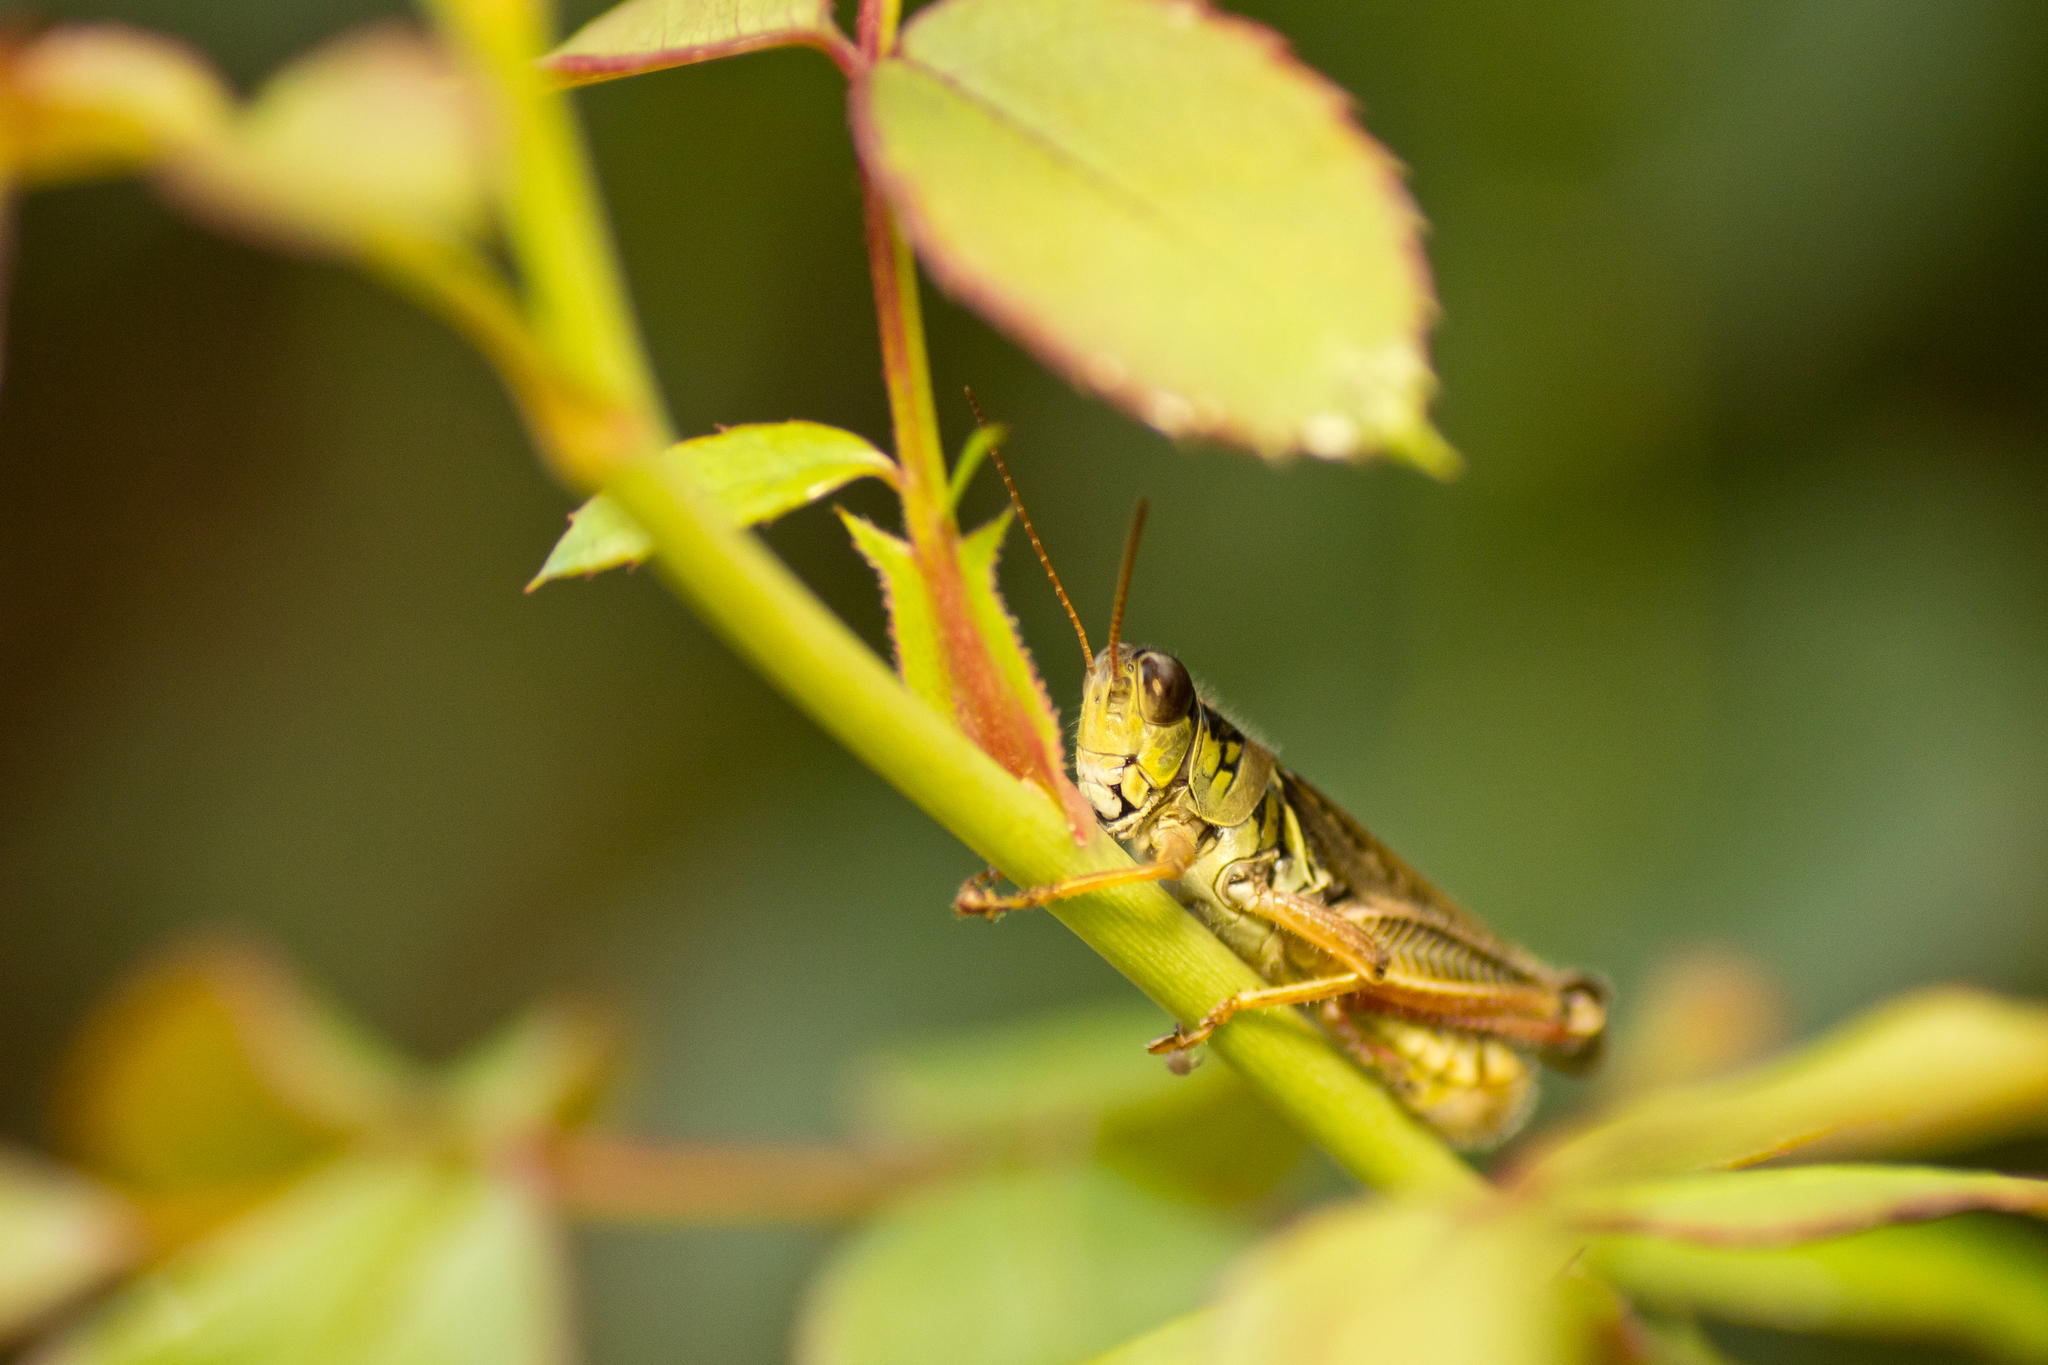 Grasshopper by Robert Guimont